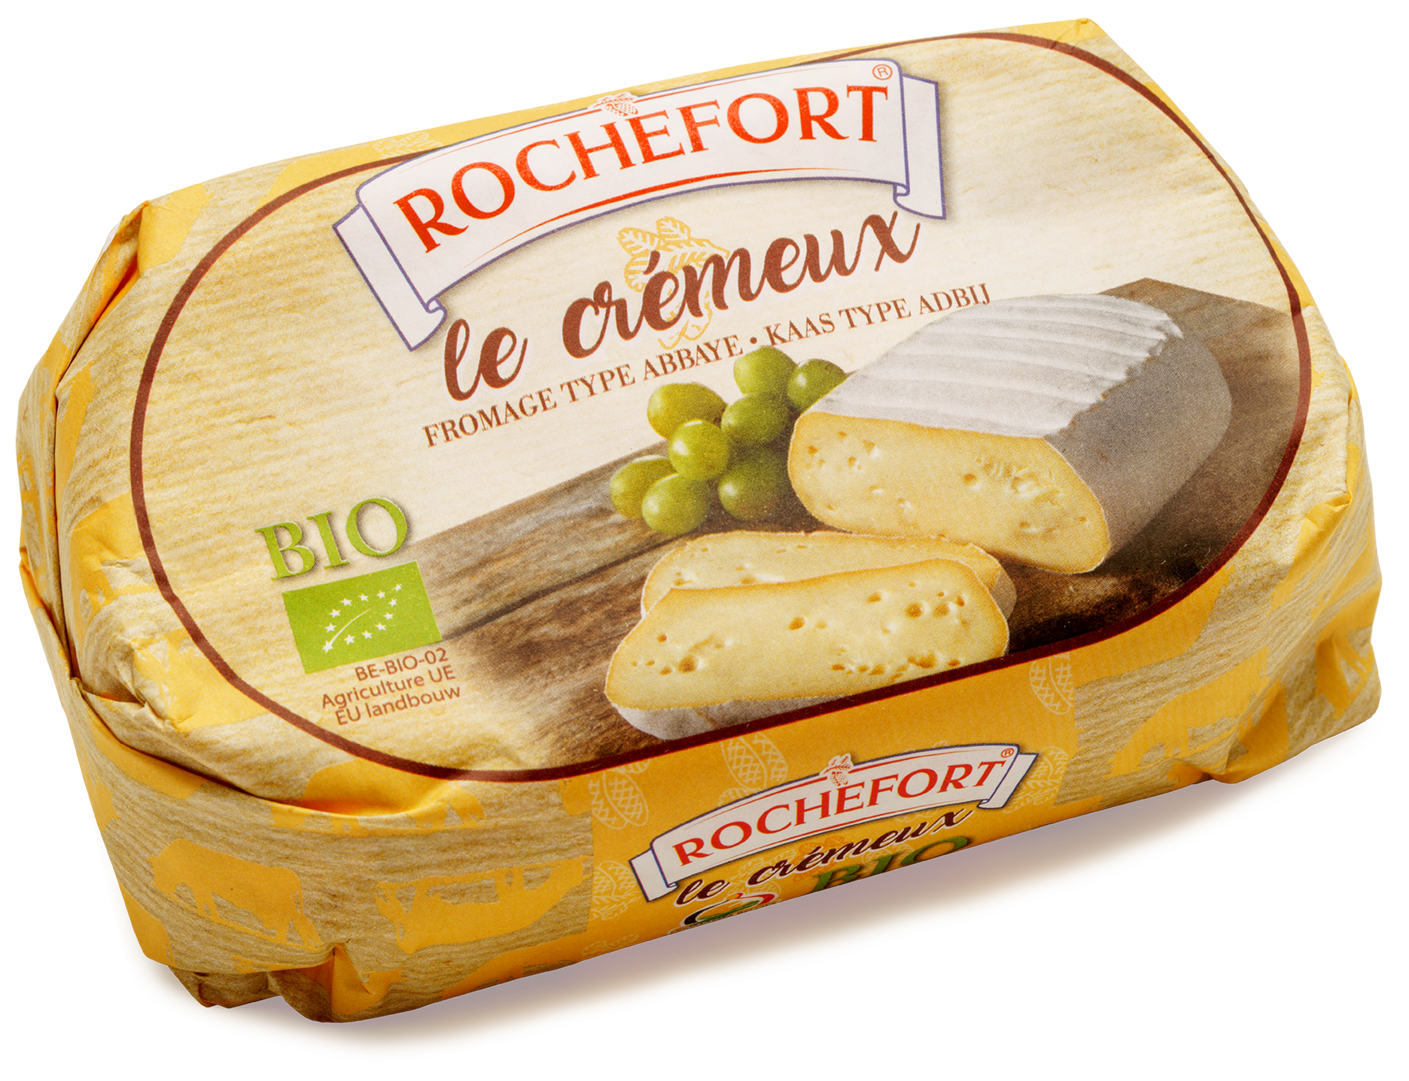 Rochefort Fromage Le crémeux bio 400g